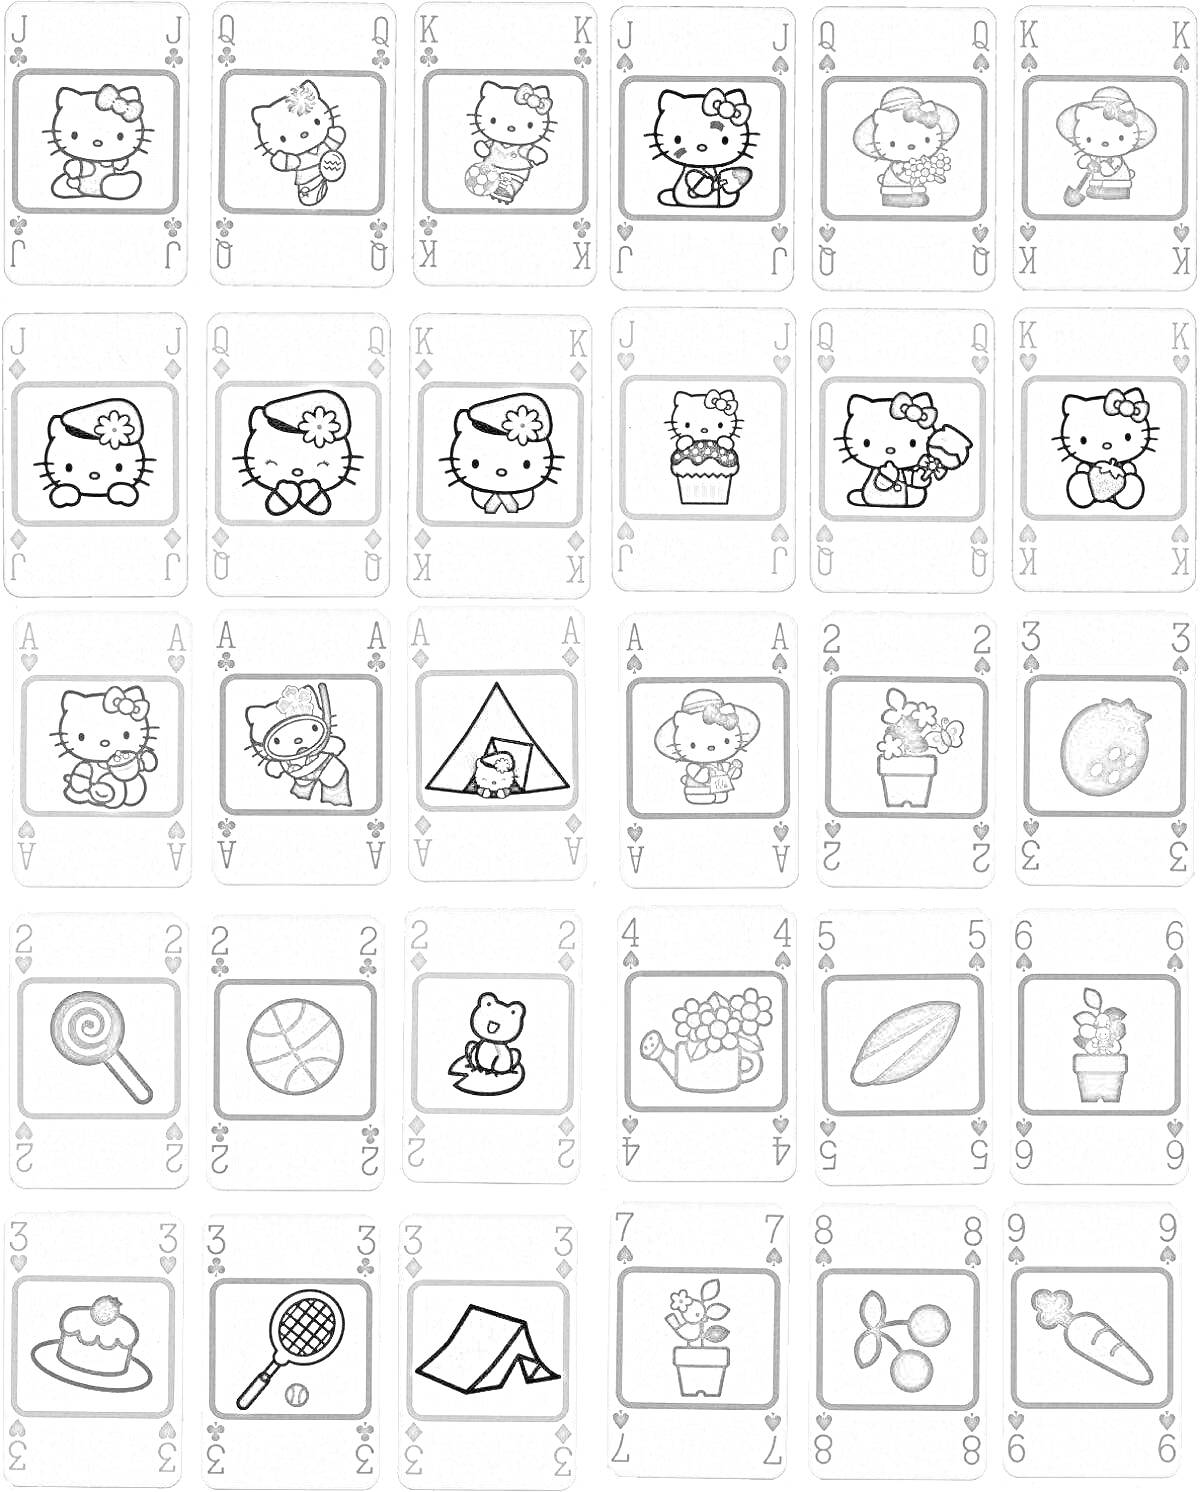 Раскраска Карточки Уно с изображениями Hello Kitty и разными предметами, включая игрушки, палатки, цветы, сладости, и спортивные предметы